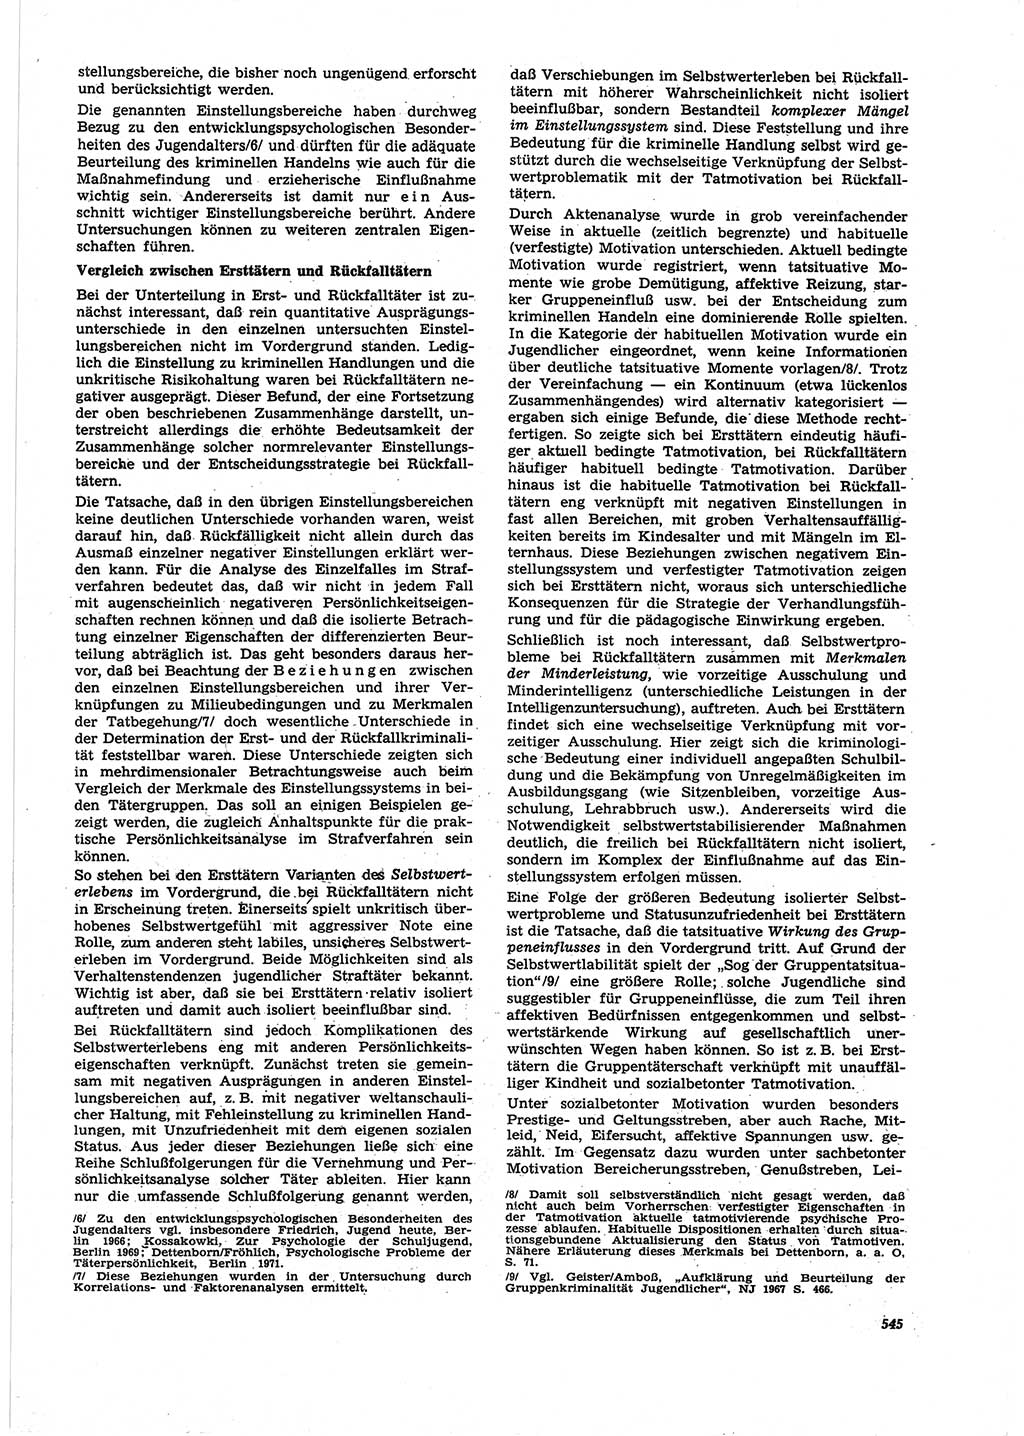 Neue Justiz (NJ), Zeitschrift für Recht und Rechtswissenschaft [Deutsche Demokratische Republik (DDR)], 25. Jahrgang 1971, Seite 545 (NJ DDR 1971, S. 545)